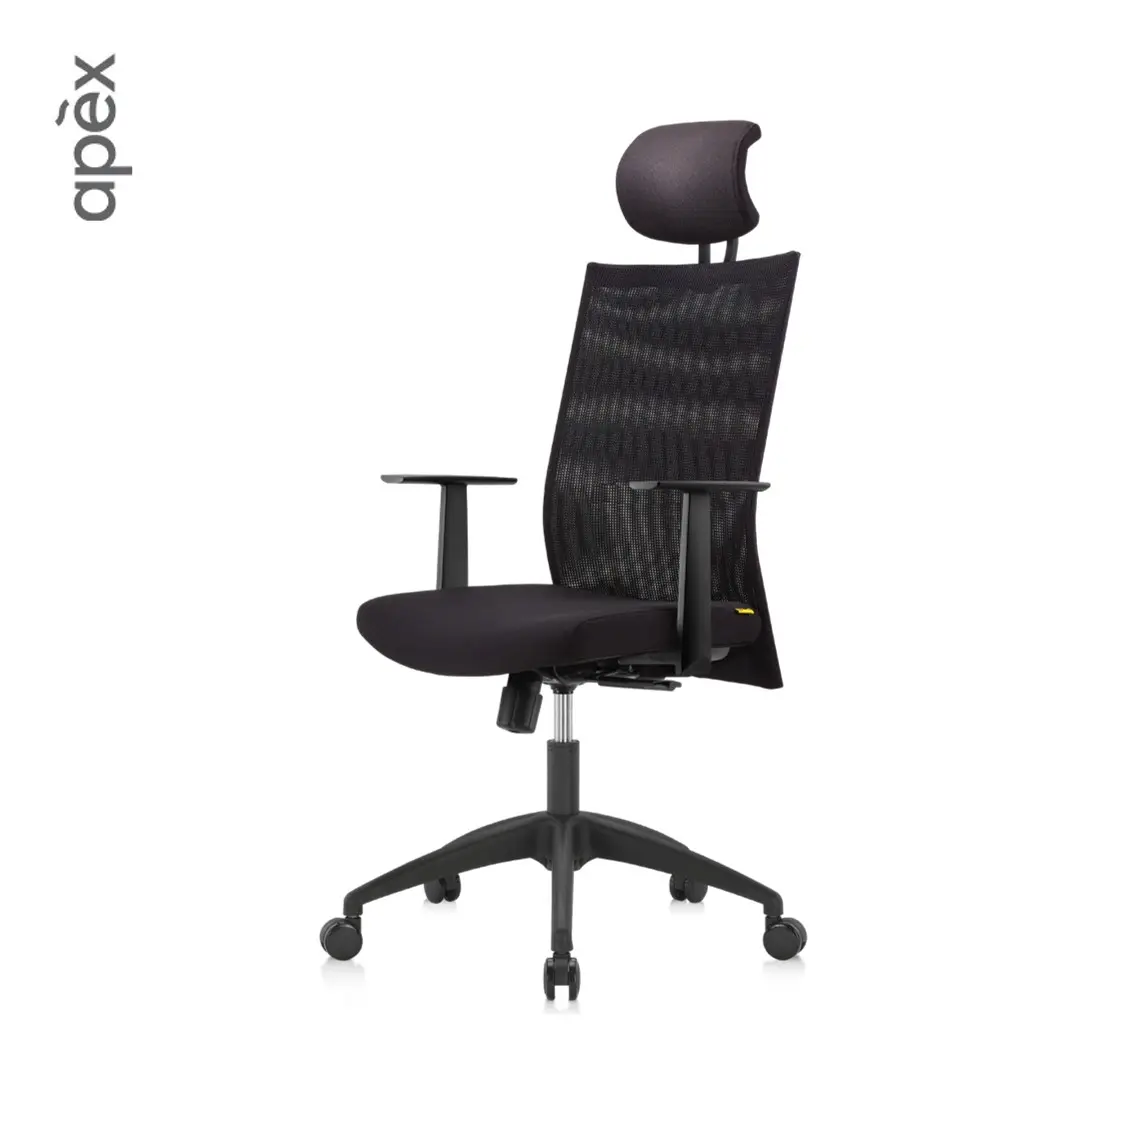 Mobilier de bureau exclusif chaise de bureau à dossier élevé, chaise d'ordinateur ergonomique, chaise de bureau pour poste de travail de direction